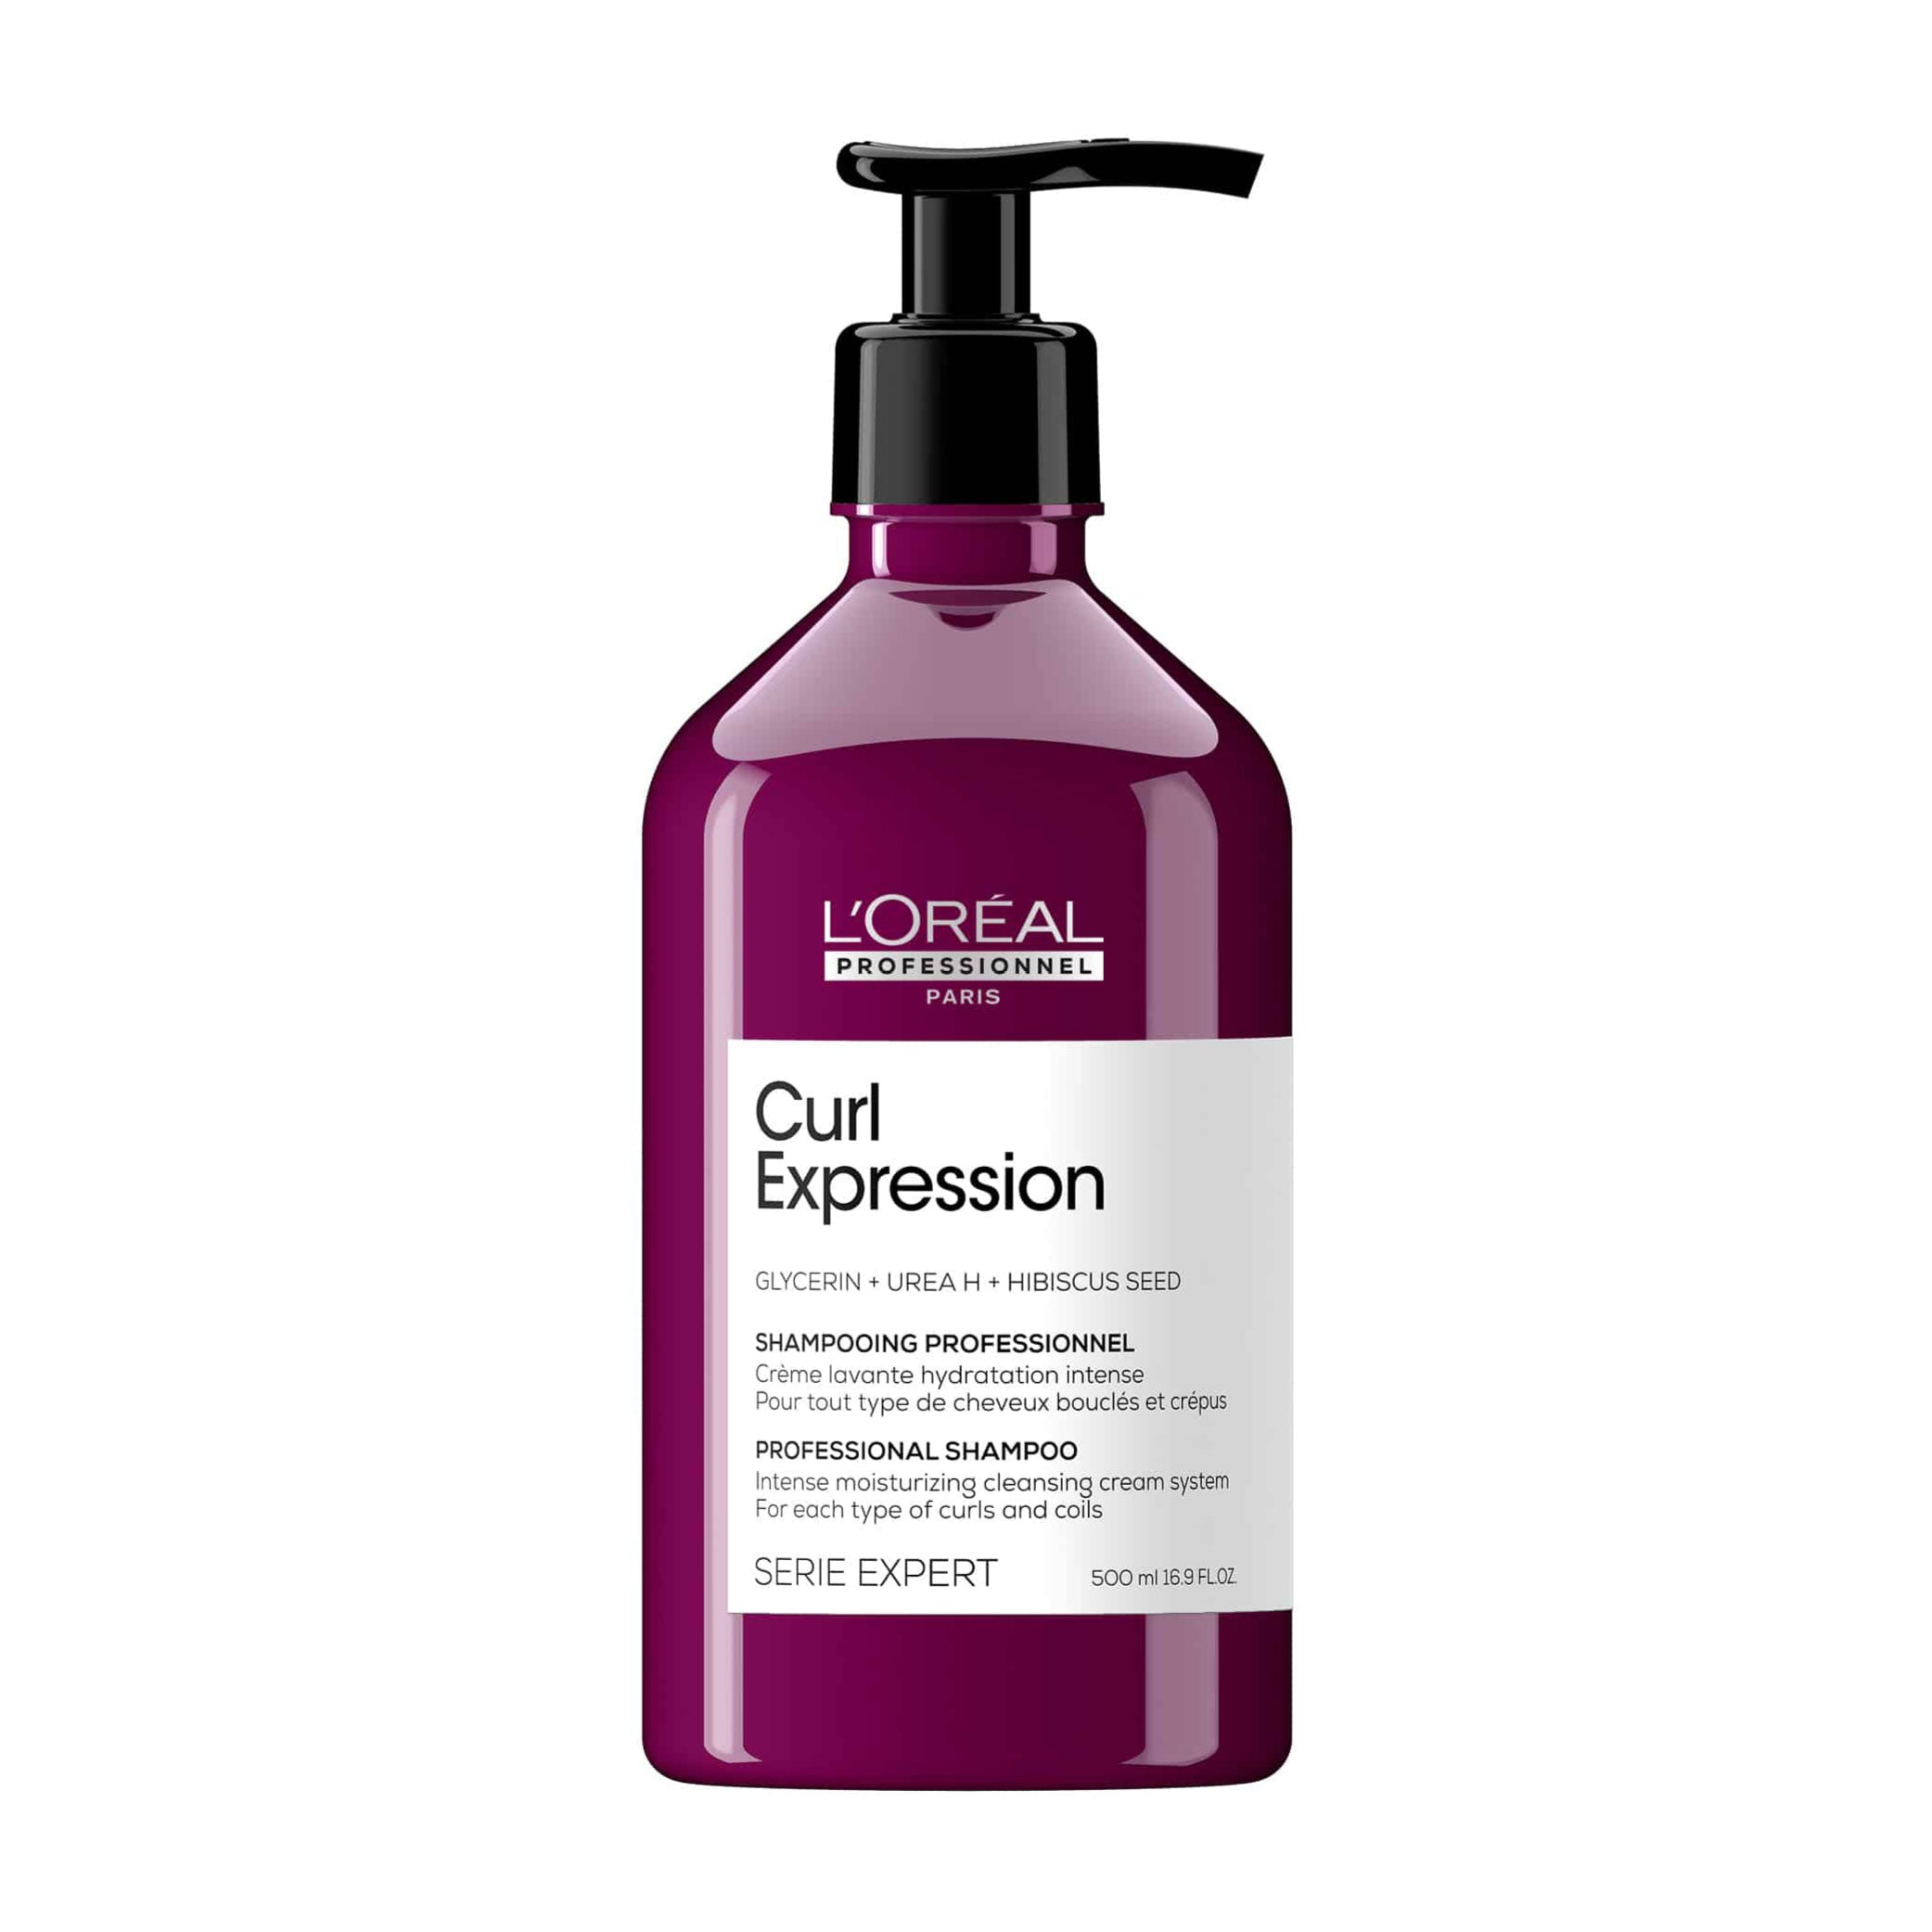 Curl Expression Hydrating Shampoo